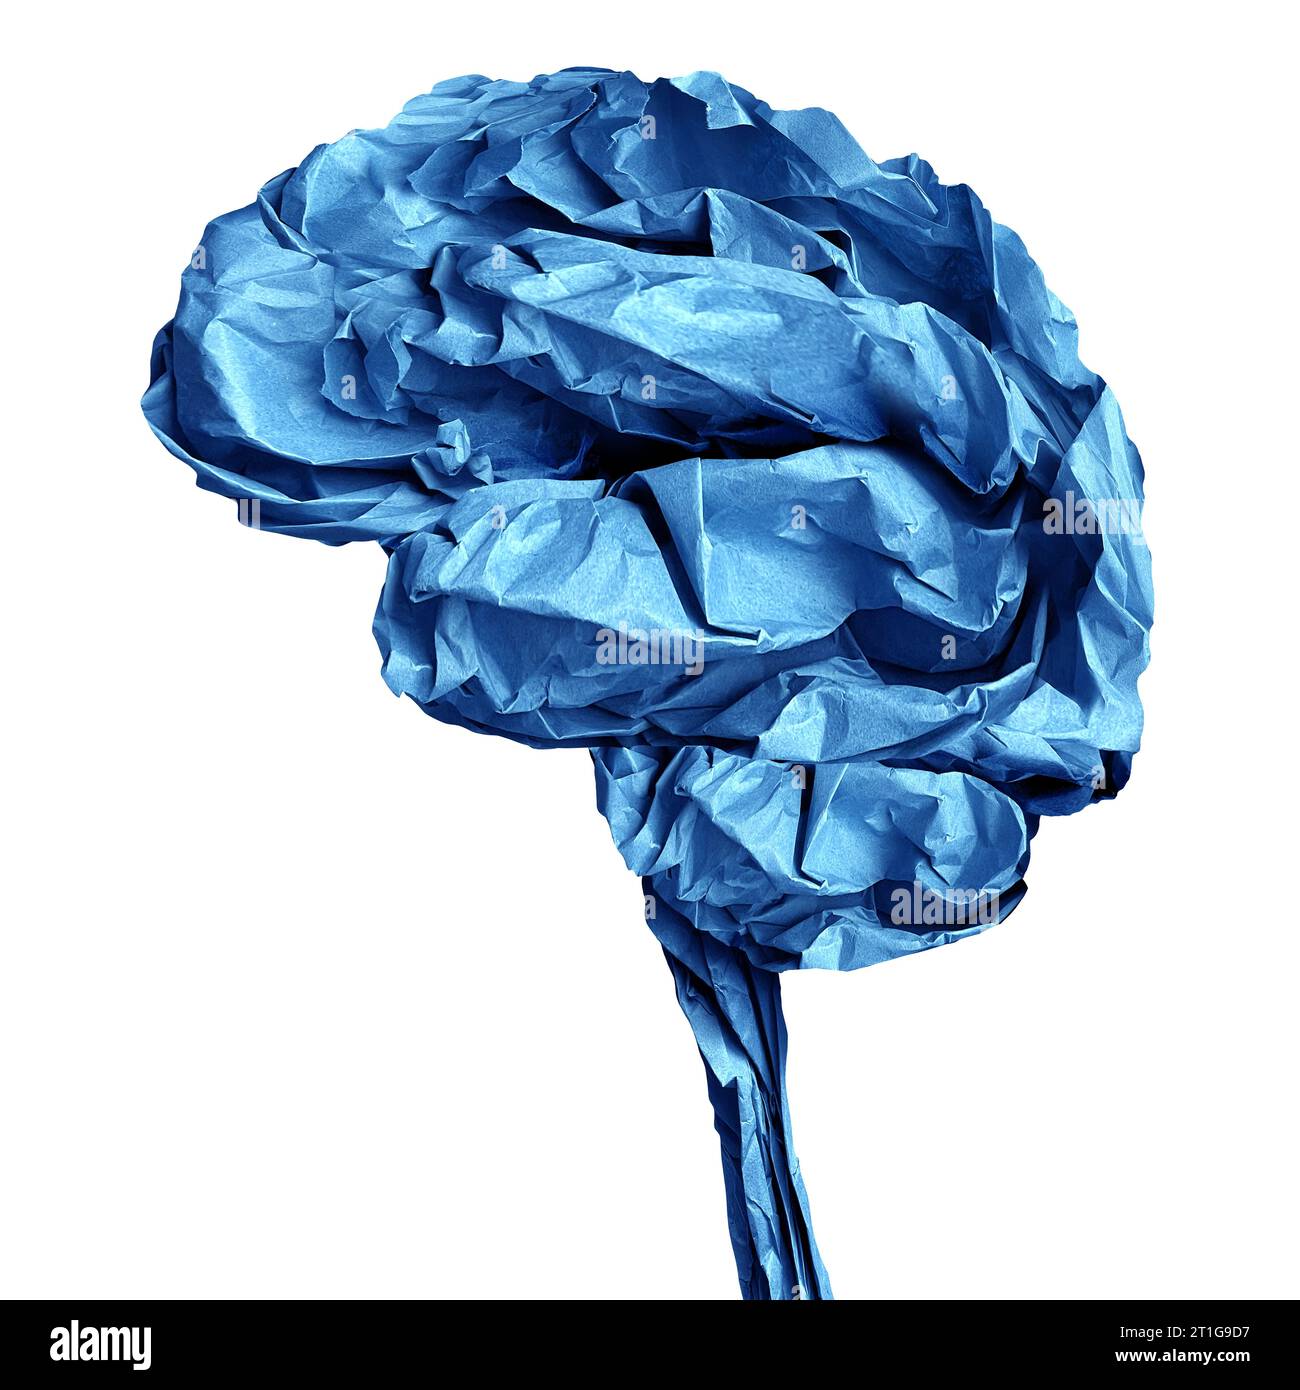 Menschliches Gehirn zerknittertes Papierobjekt als neurologisches und kognitives anatomisches medizinisches Symbol eines Geistes und neurologische Funktion oder Schlaganfall im Zusammenhang Stockfoto